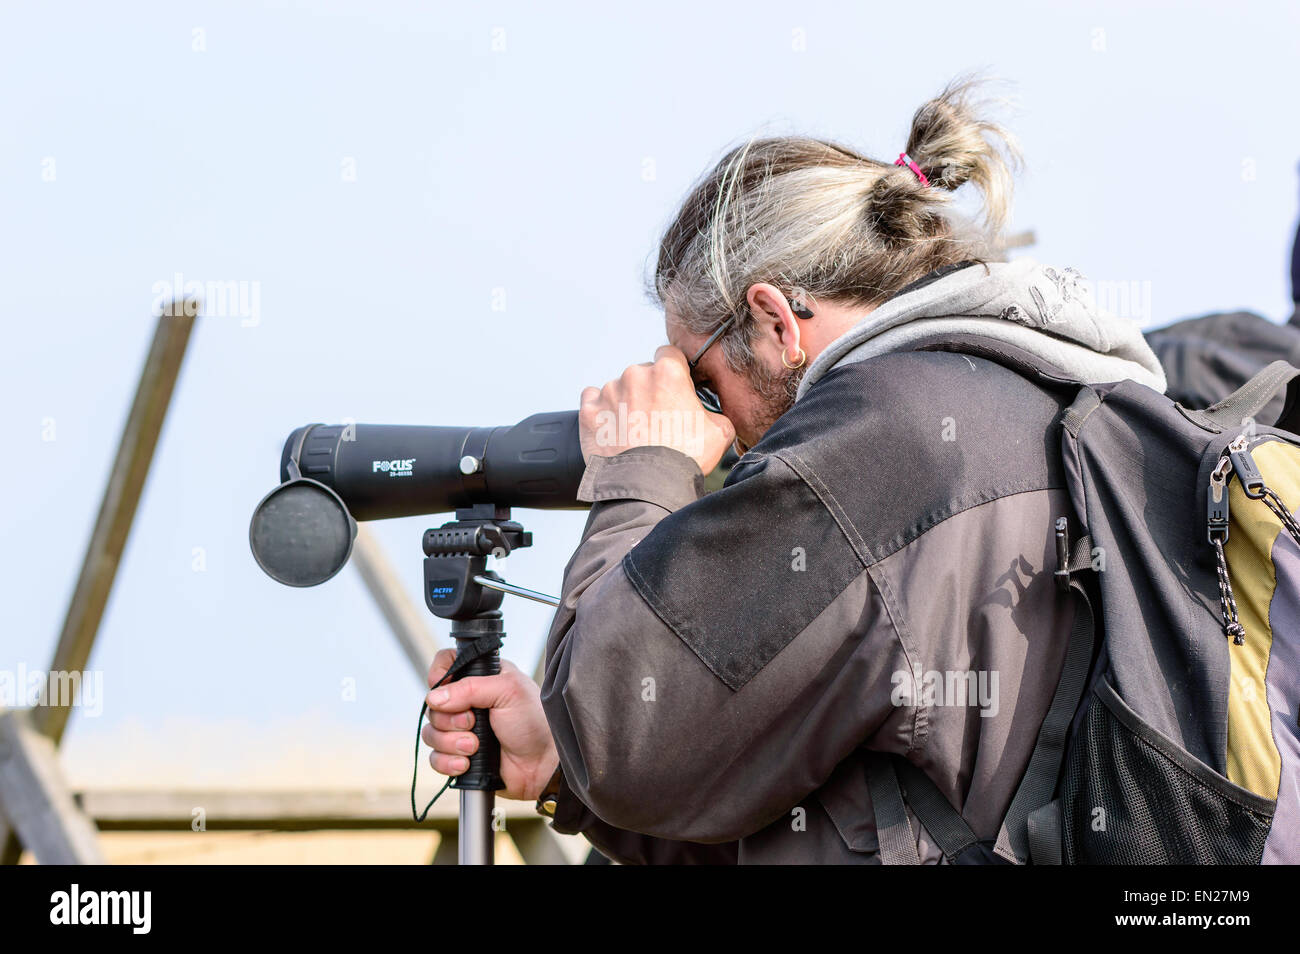 Bejershamn, Schweden - 25. April 2015: Unbekannte männliche Vogelbeobachter mit Spektiv finden interessante Vögel zu beobachten. Person, von der Seite gesehen und hinter von der Hüfte aufwärts. Bejershamn ist ein geschütztes Naturschutzgebiet bekannt für seine Vogelwelt. Stockfoto